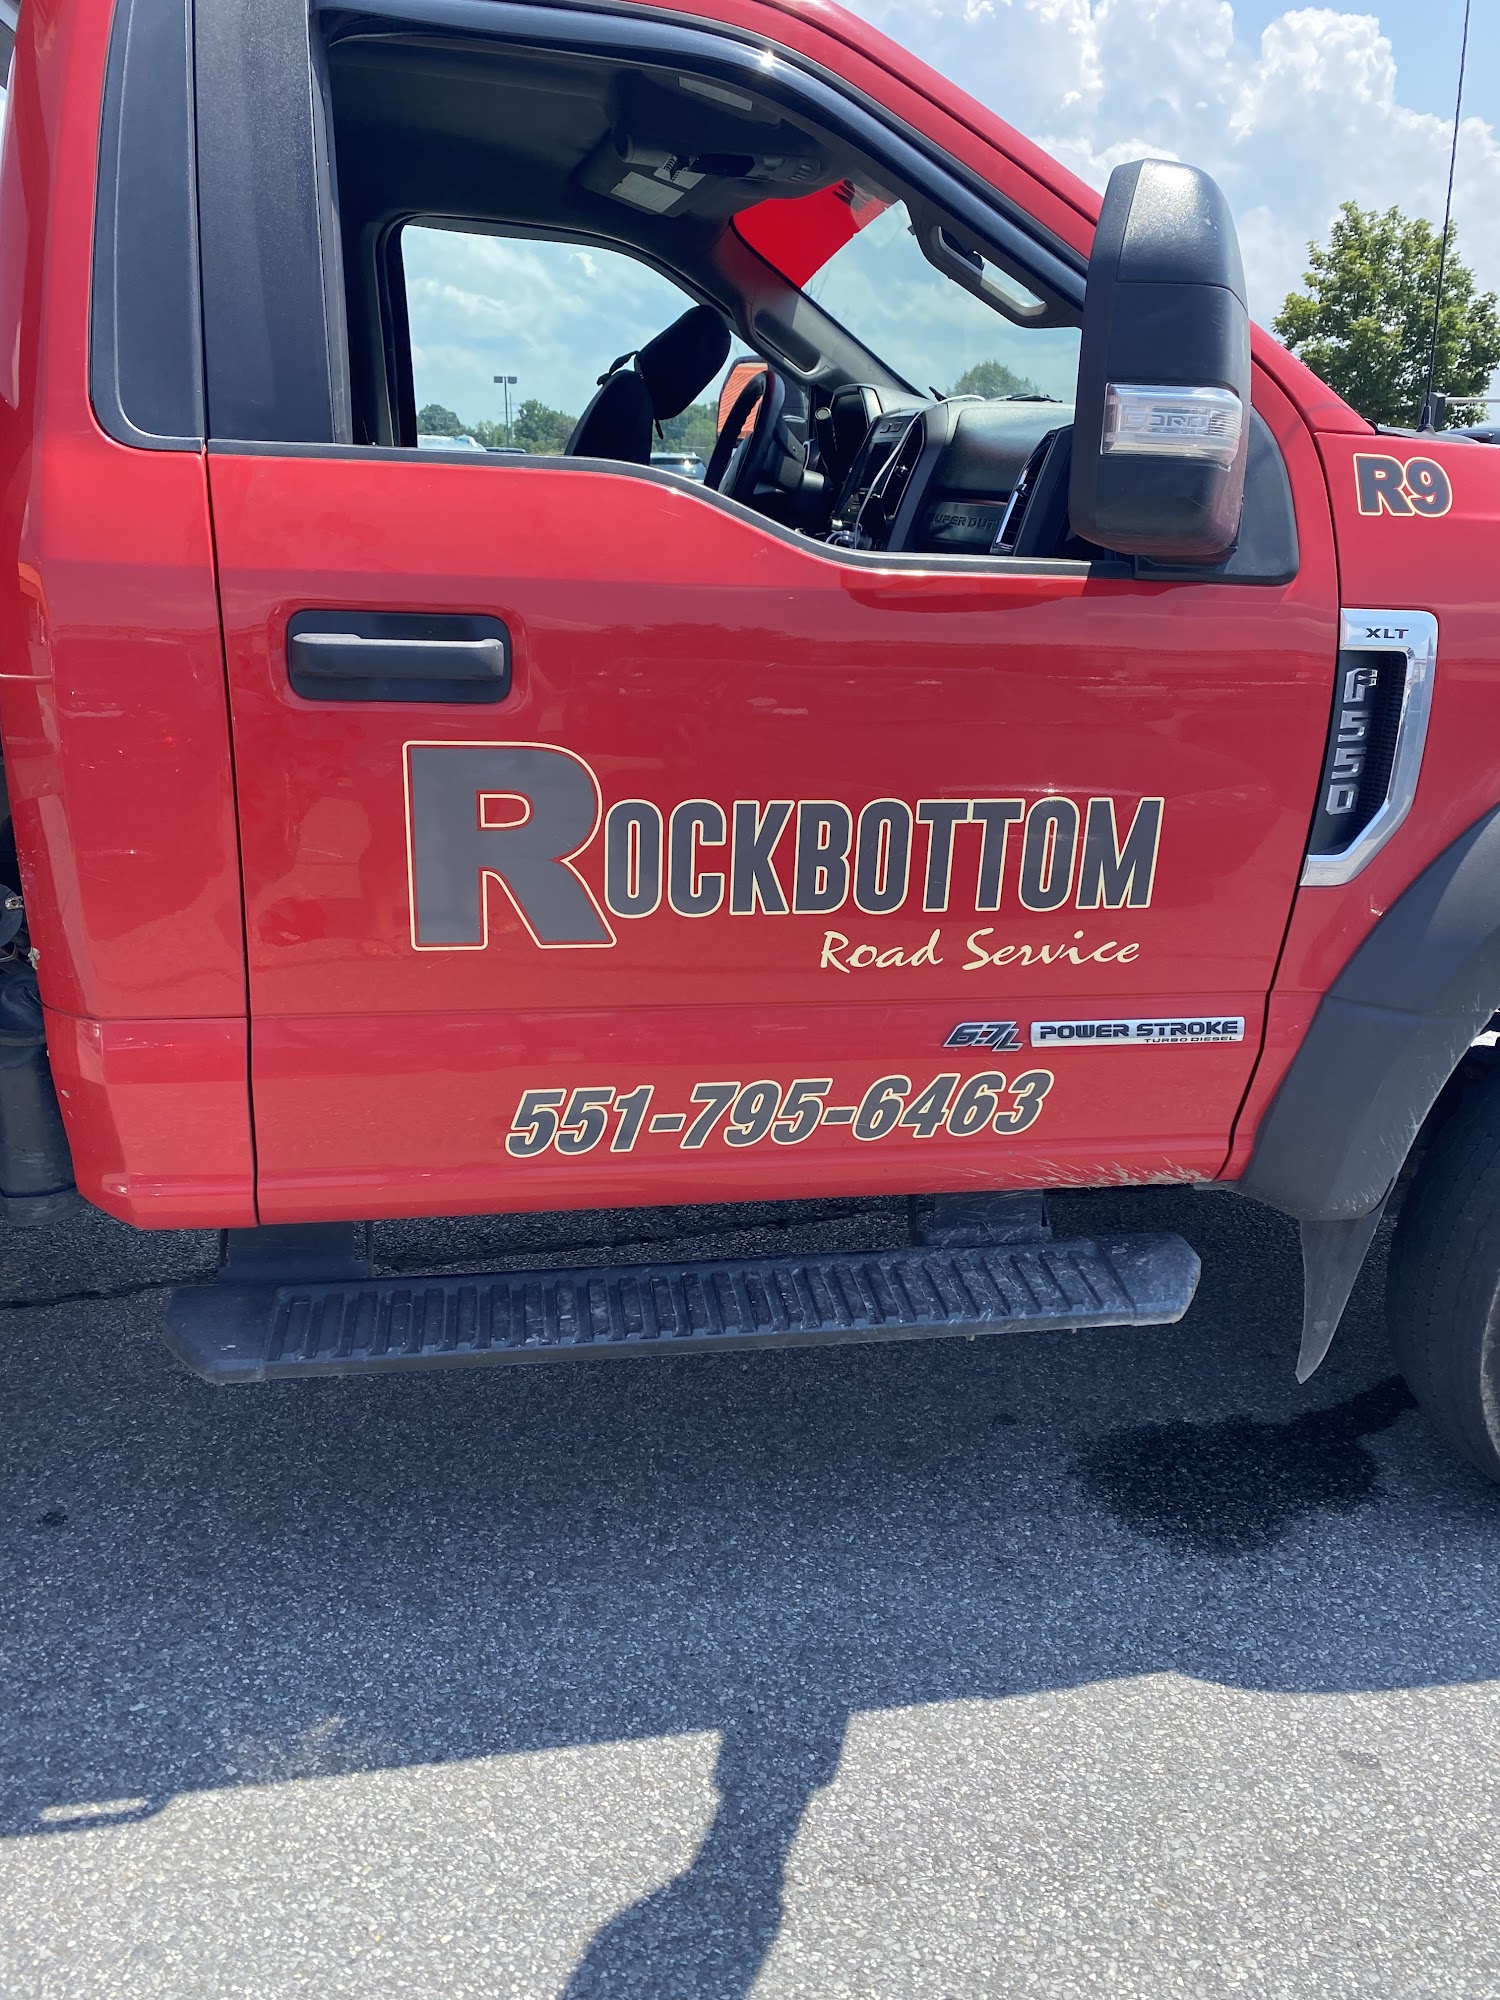 Rockbottom Road Service